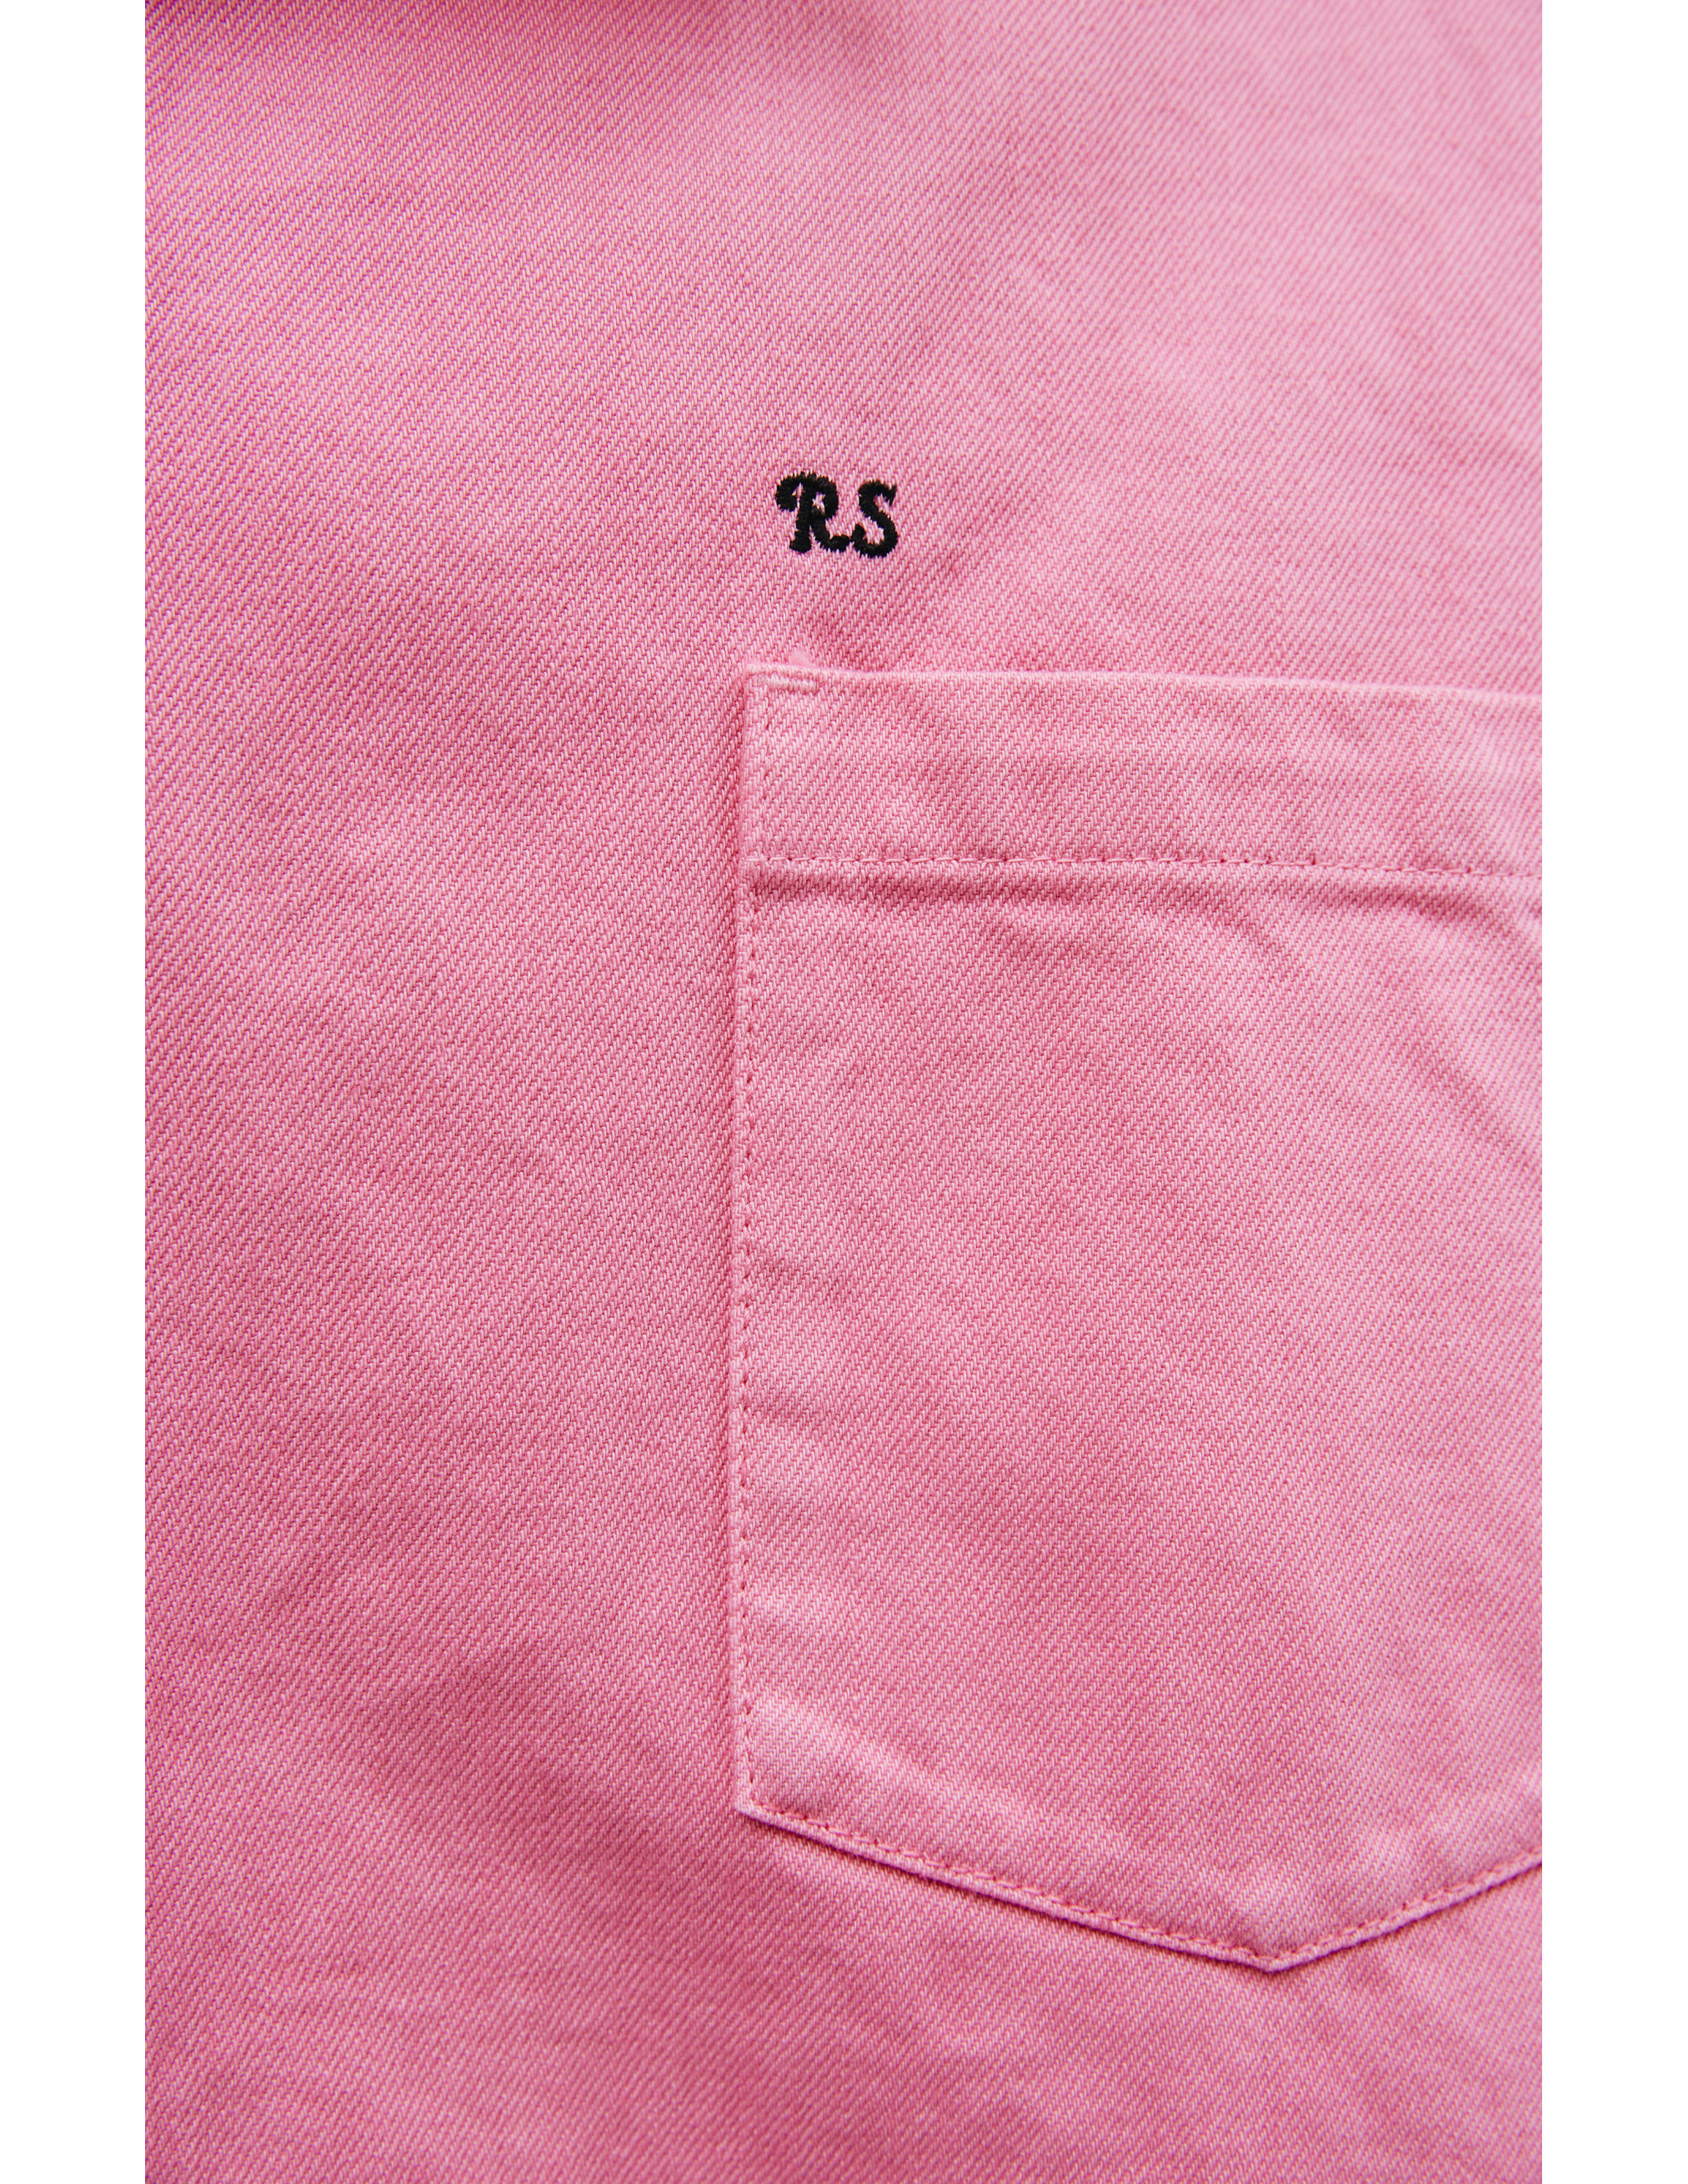 Джинсовая Оверсайз рубашка с патчем Raf Simons 212-M243-10032-0034, размер L;M - фото 6